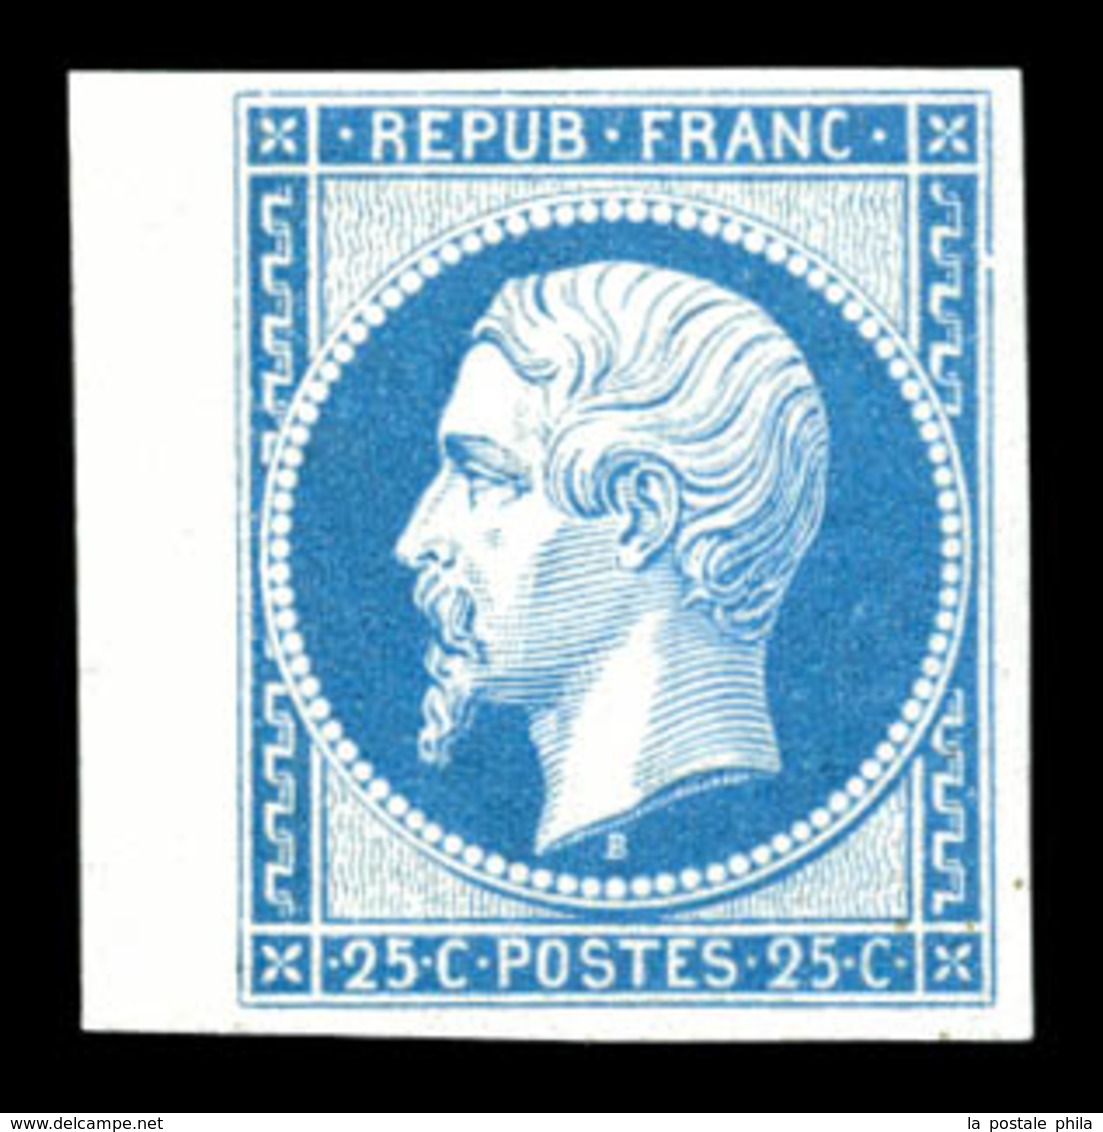 ** N°10c, 25c Bleu, Impression De 1862 Bdf, FRAÎCHEUR POSTALE, SUP (certificat)  Qualité: ** - 1852 Louis-Napoléon